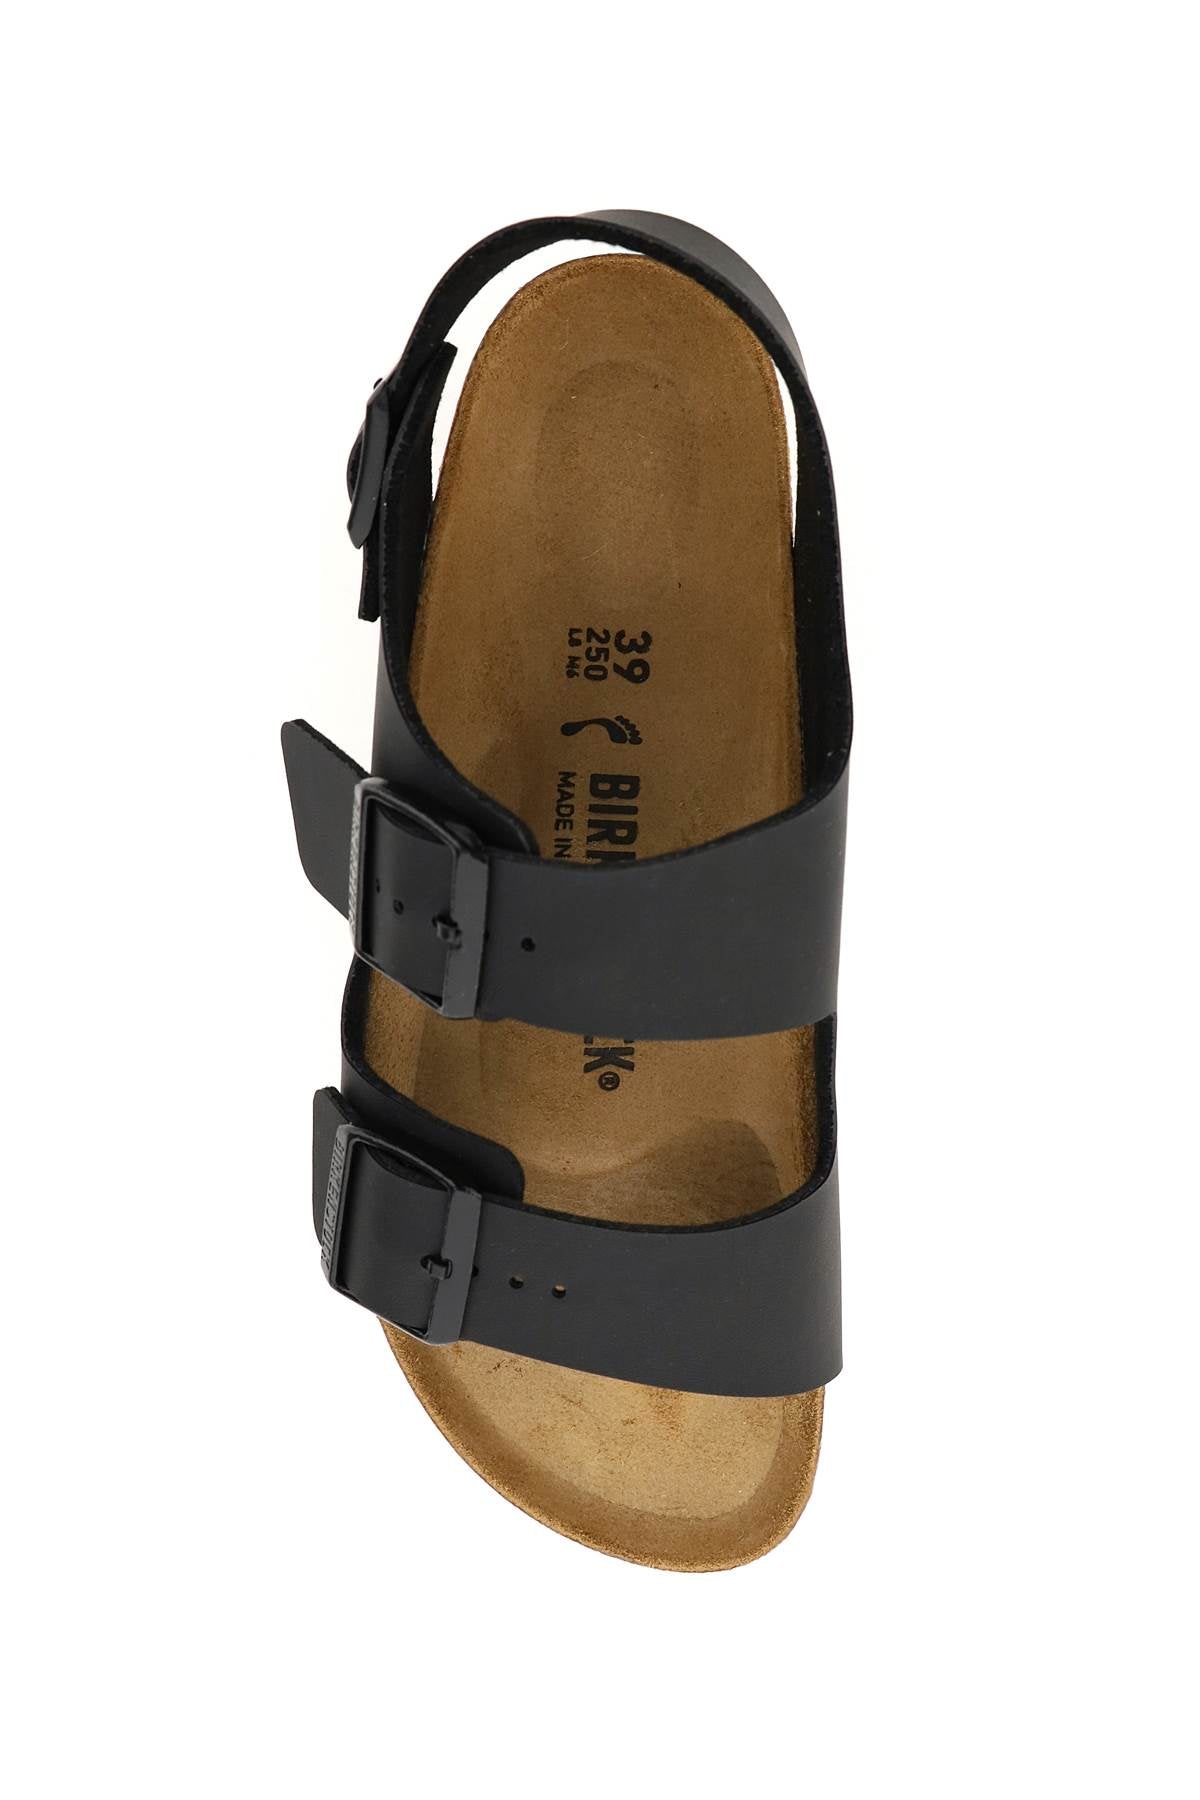 Birkenstock milano sandals narrow fit-1